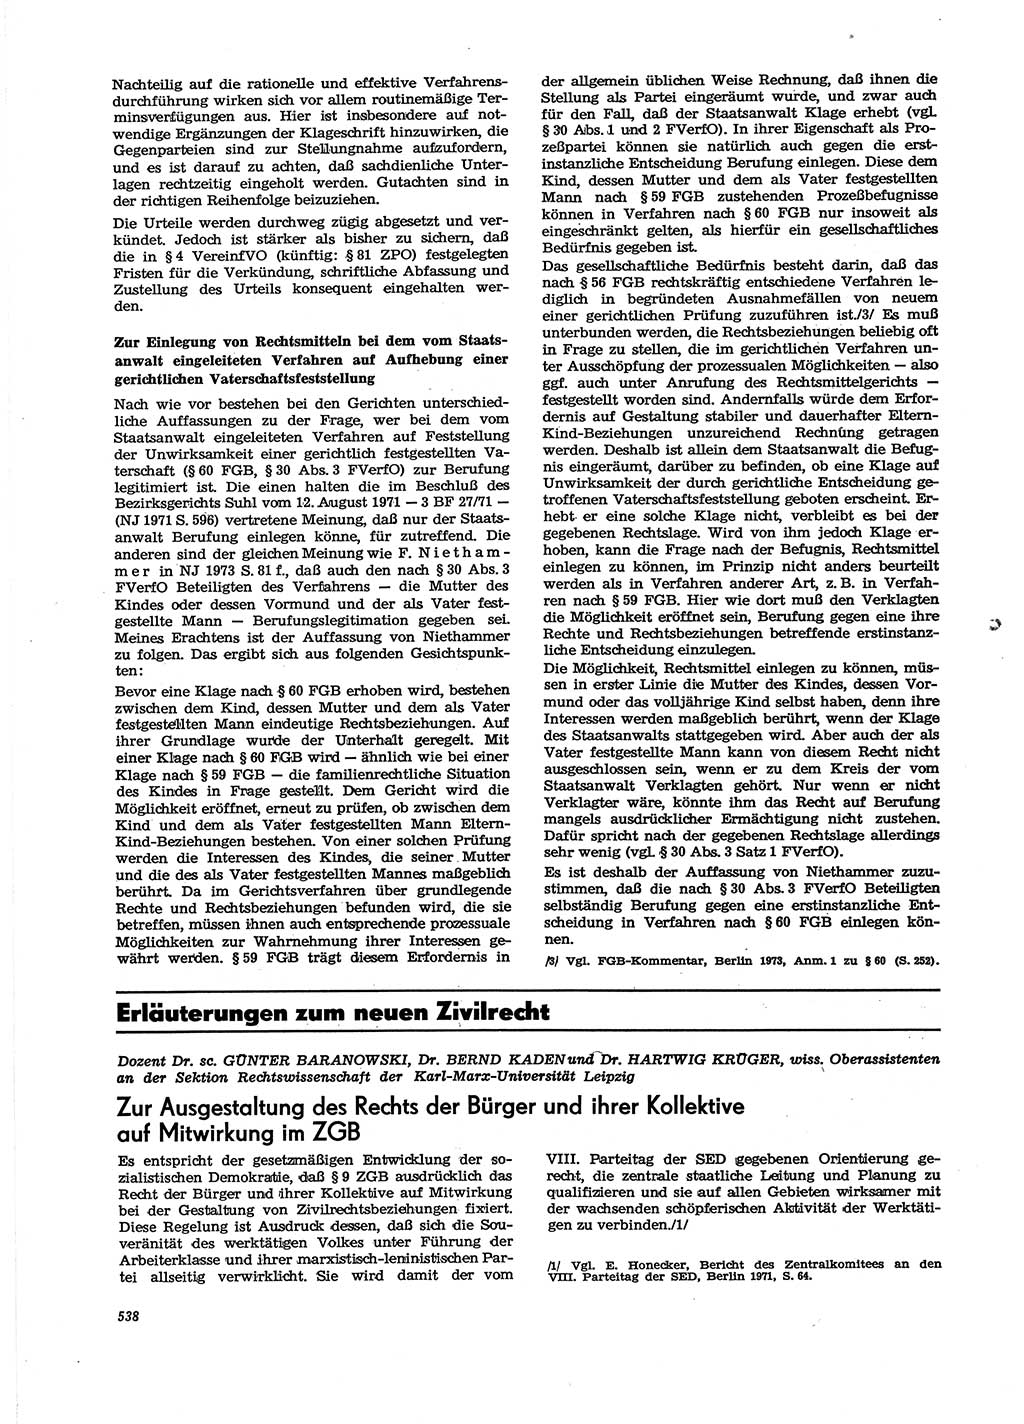 Neue Justiz (NJ), Zeitschrift für Recht und Rechtswissenschaft [Deutsche Demokratische Republik (DDR)], 29. Jahrgang 1975, Seite 538 (NJ DDR 1975, S. 538)